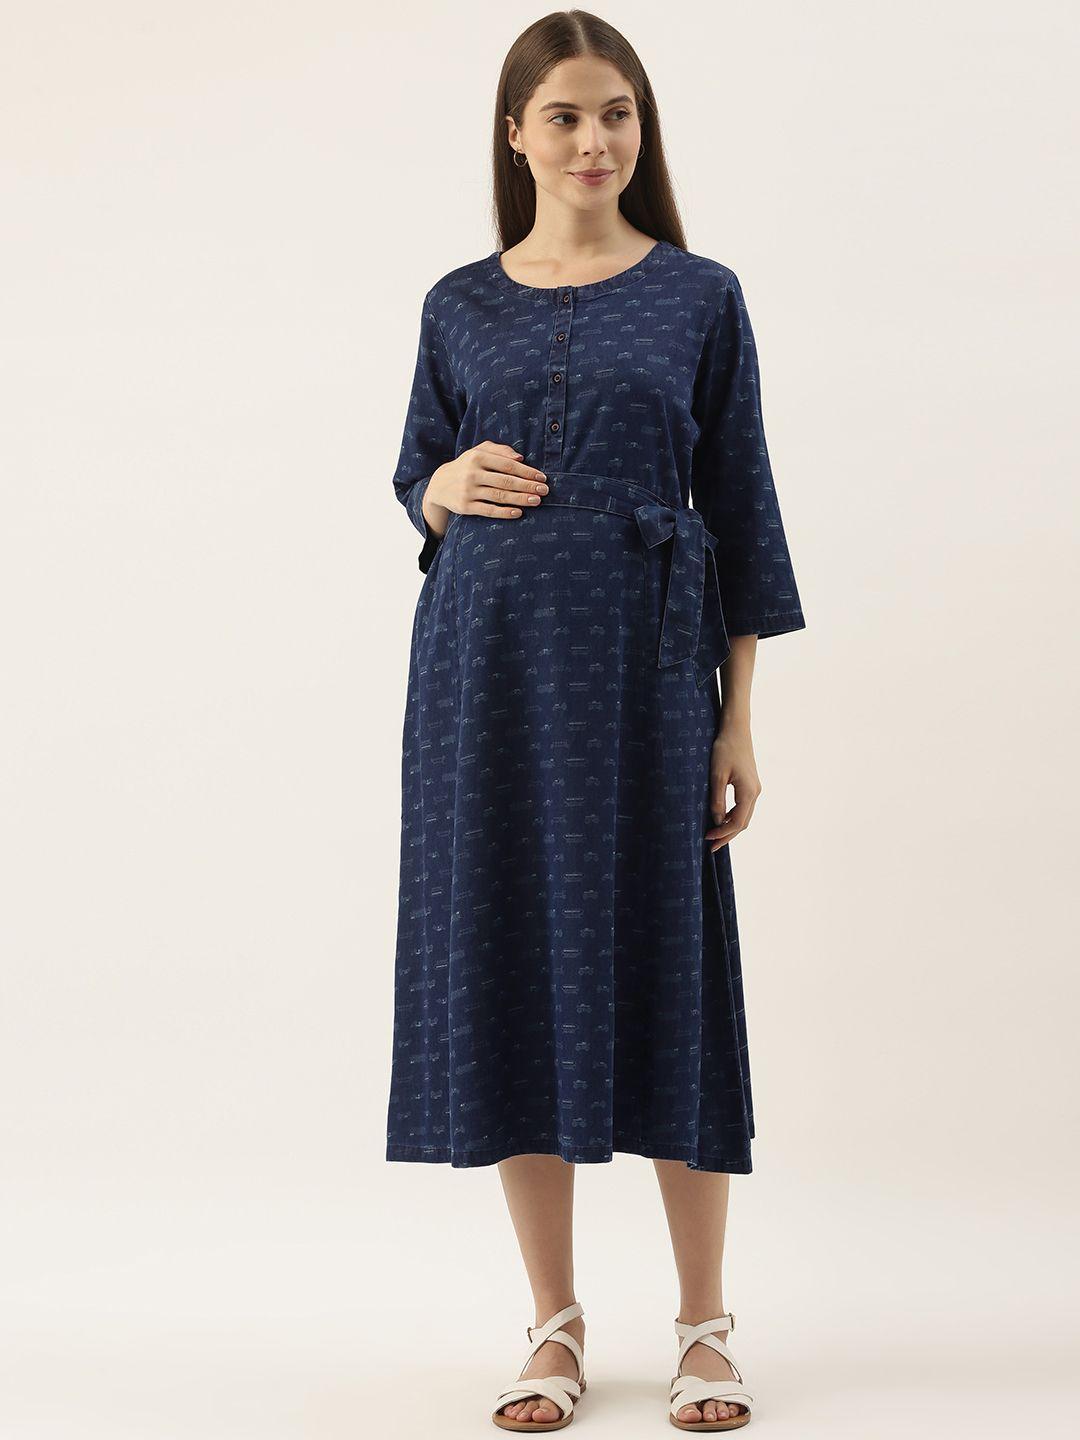 nejo navy blue solid maternity dress